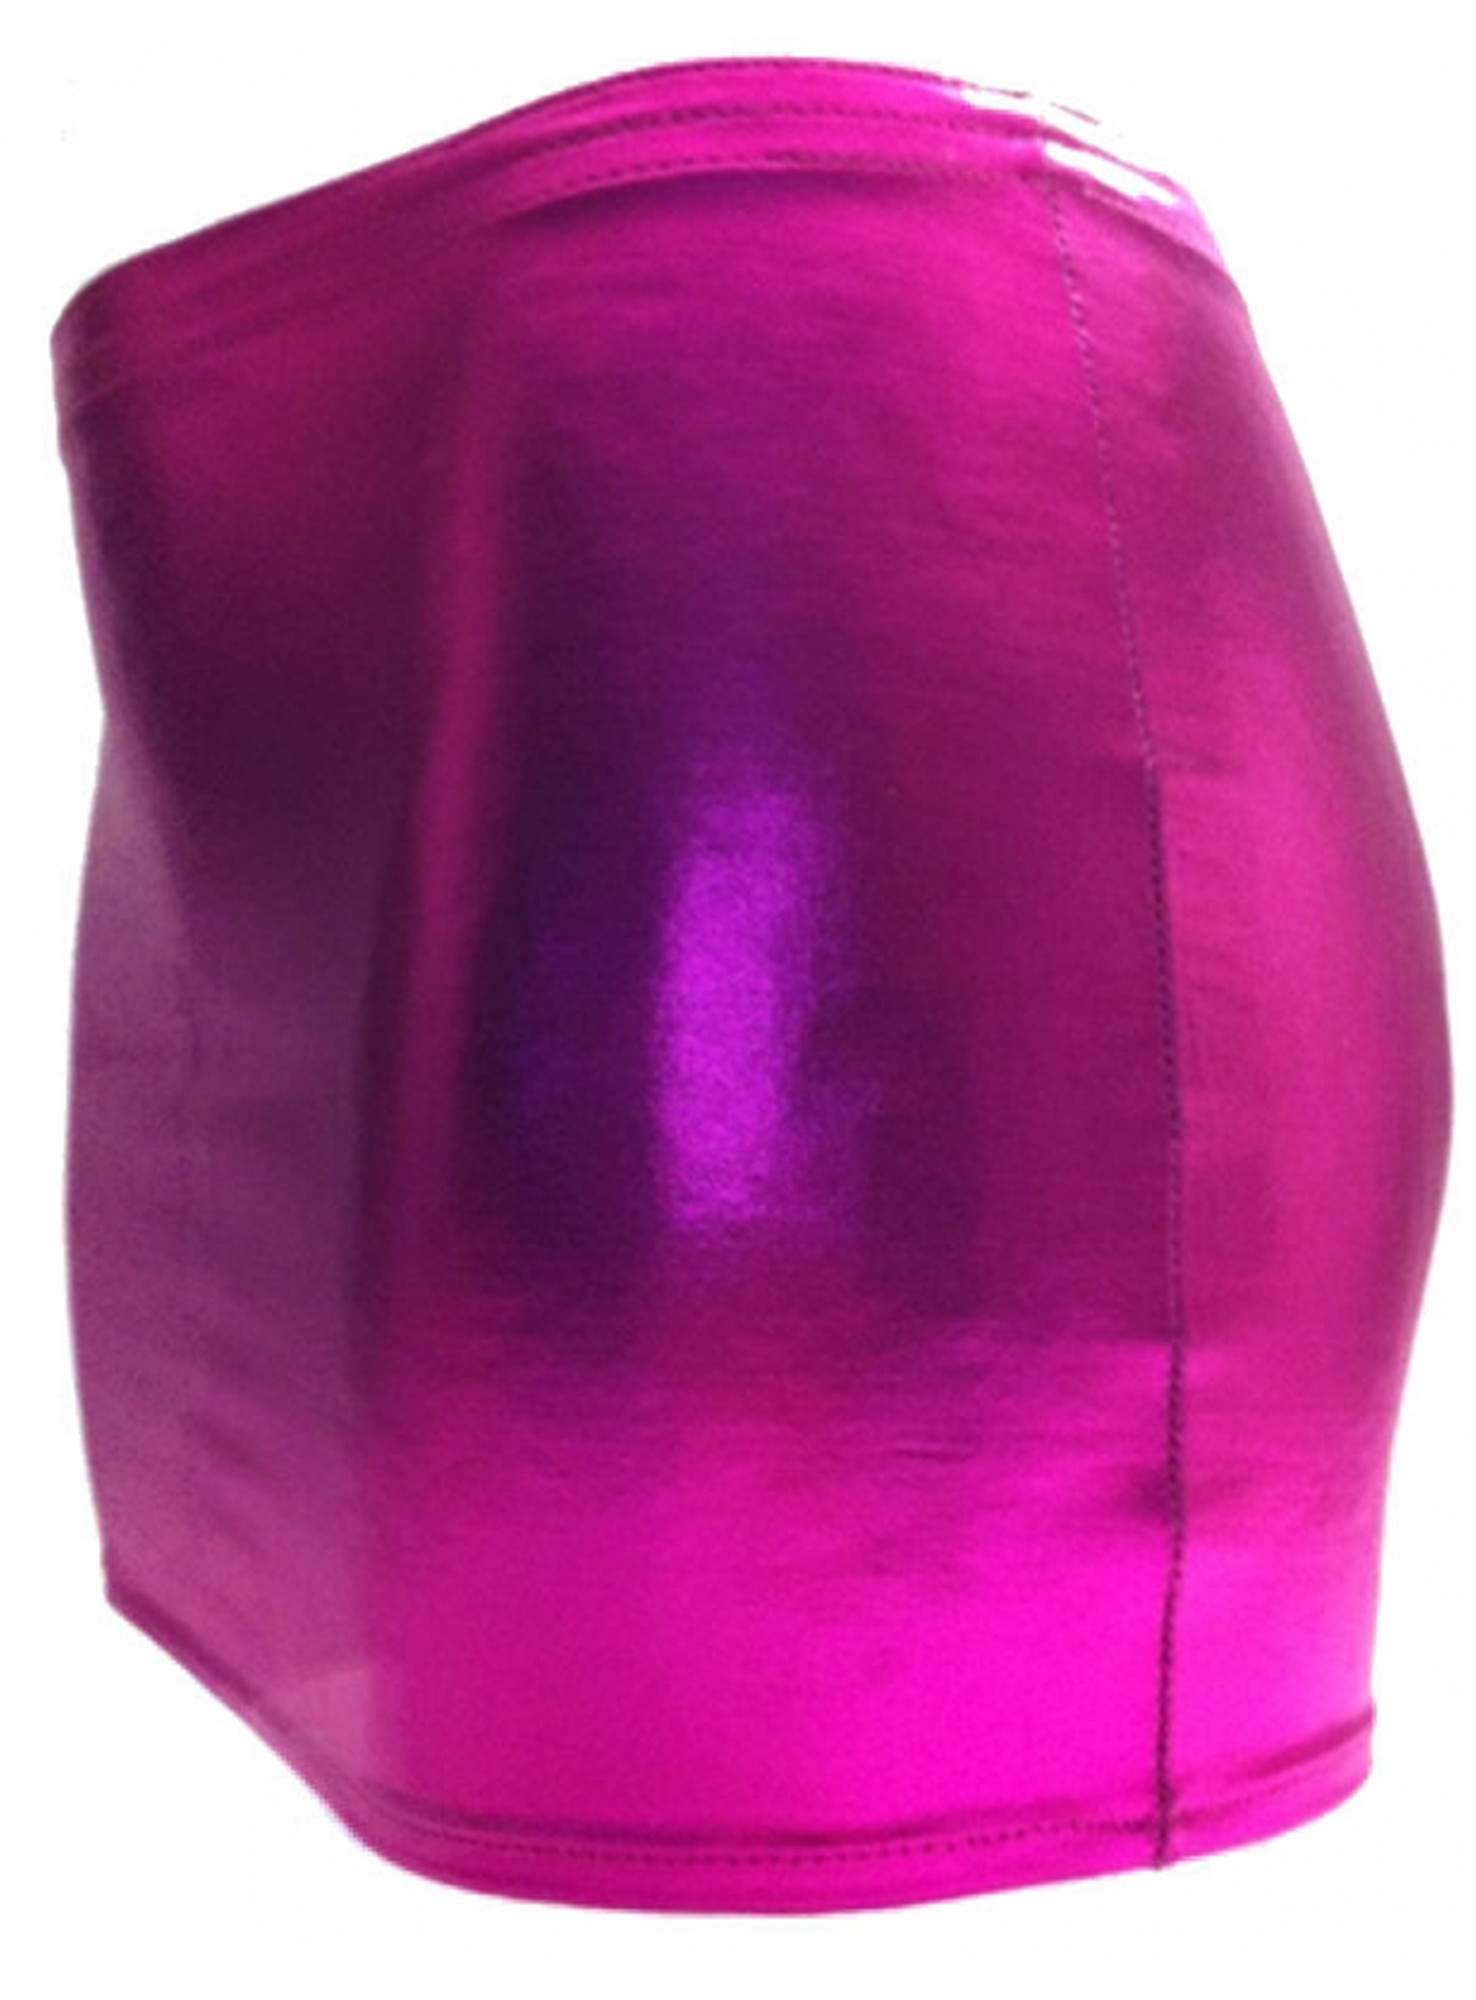 Falda wetlook rosa talla grande Haga su pedido online a bajo precio - 